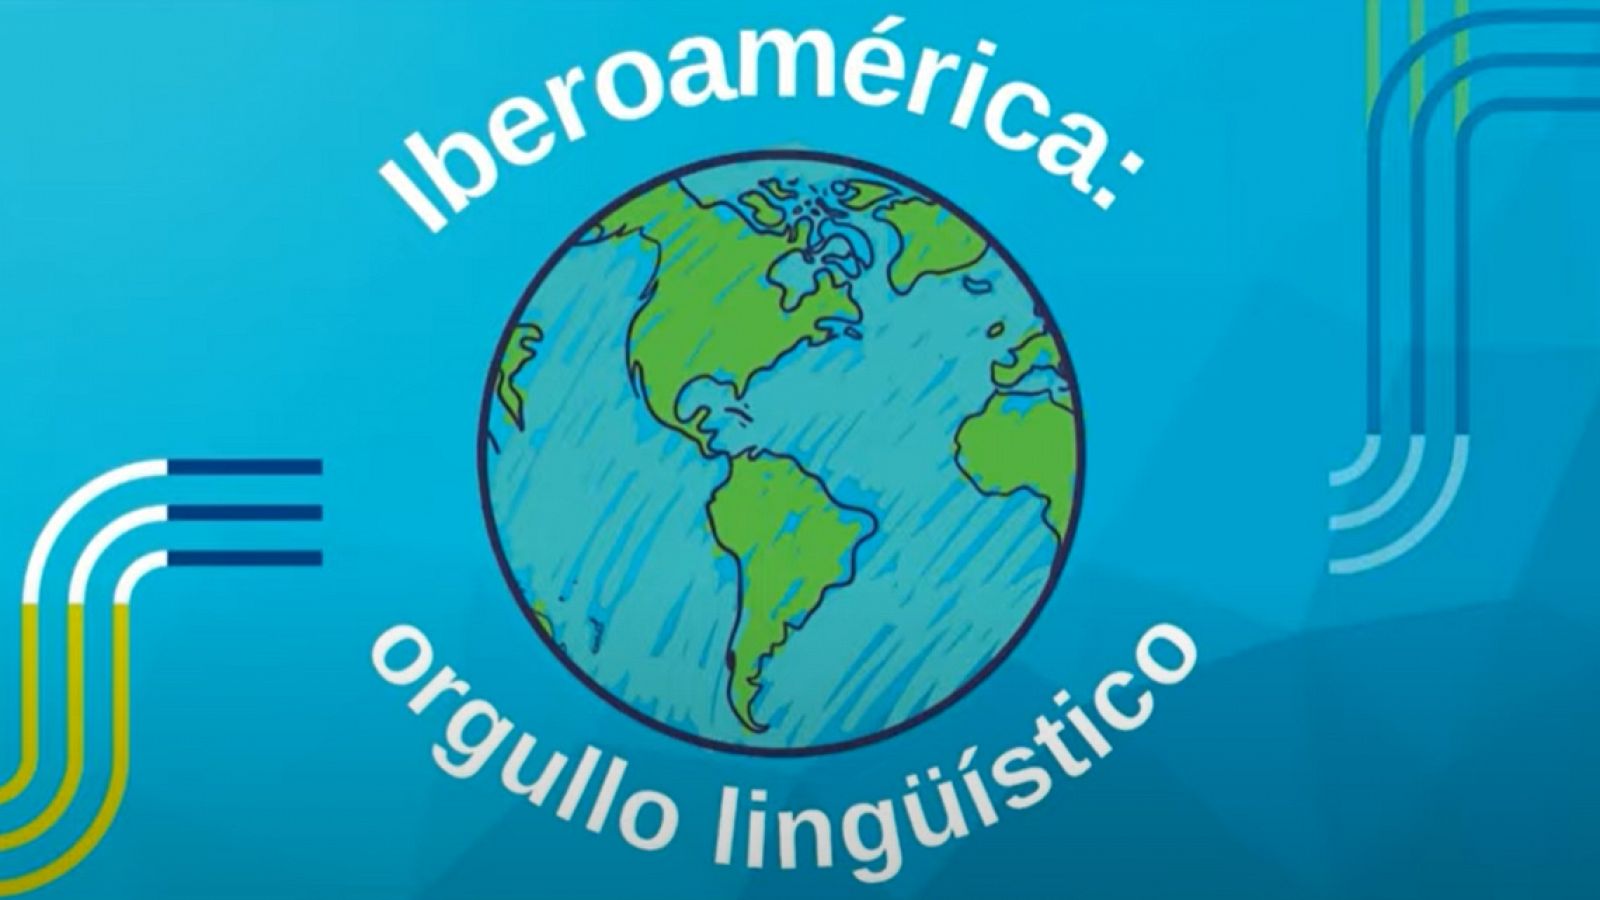 Espacio iberoamericano - Rescatar la memoria oral indígena al proteger sus lenguas - 14/09/21 - escuchar ahora